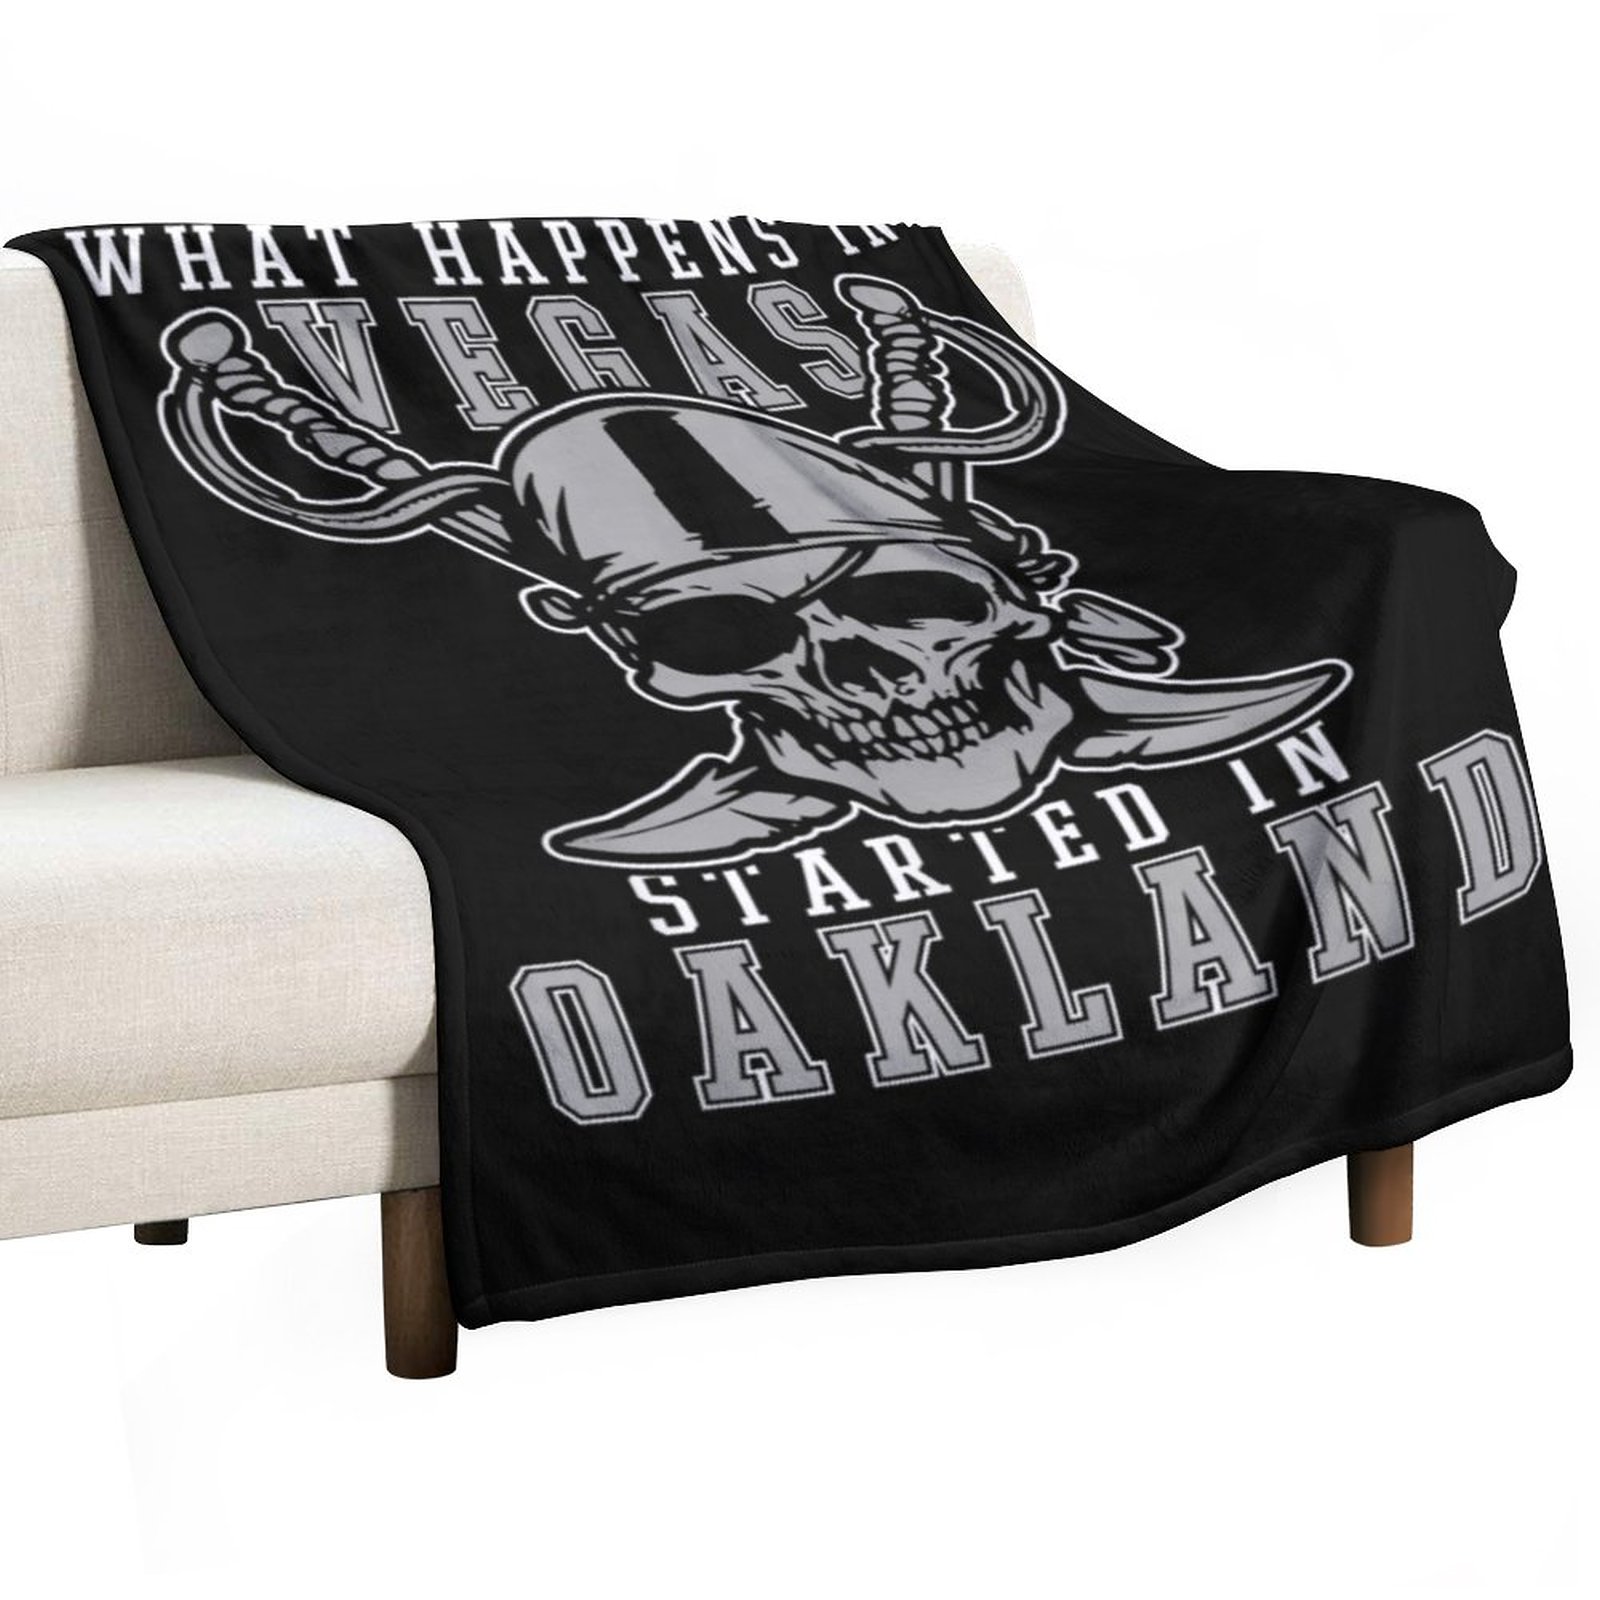 То, что происходит в Вегасе, началось в футбольном футболке Oakland Football Raider. Бросая одеяло одеяло роскошное бренд.